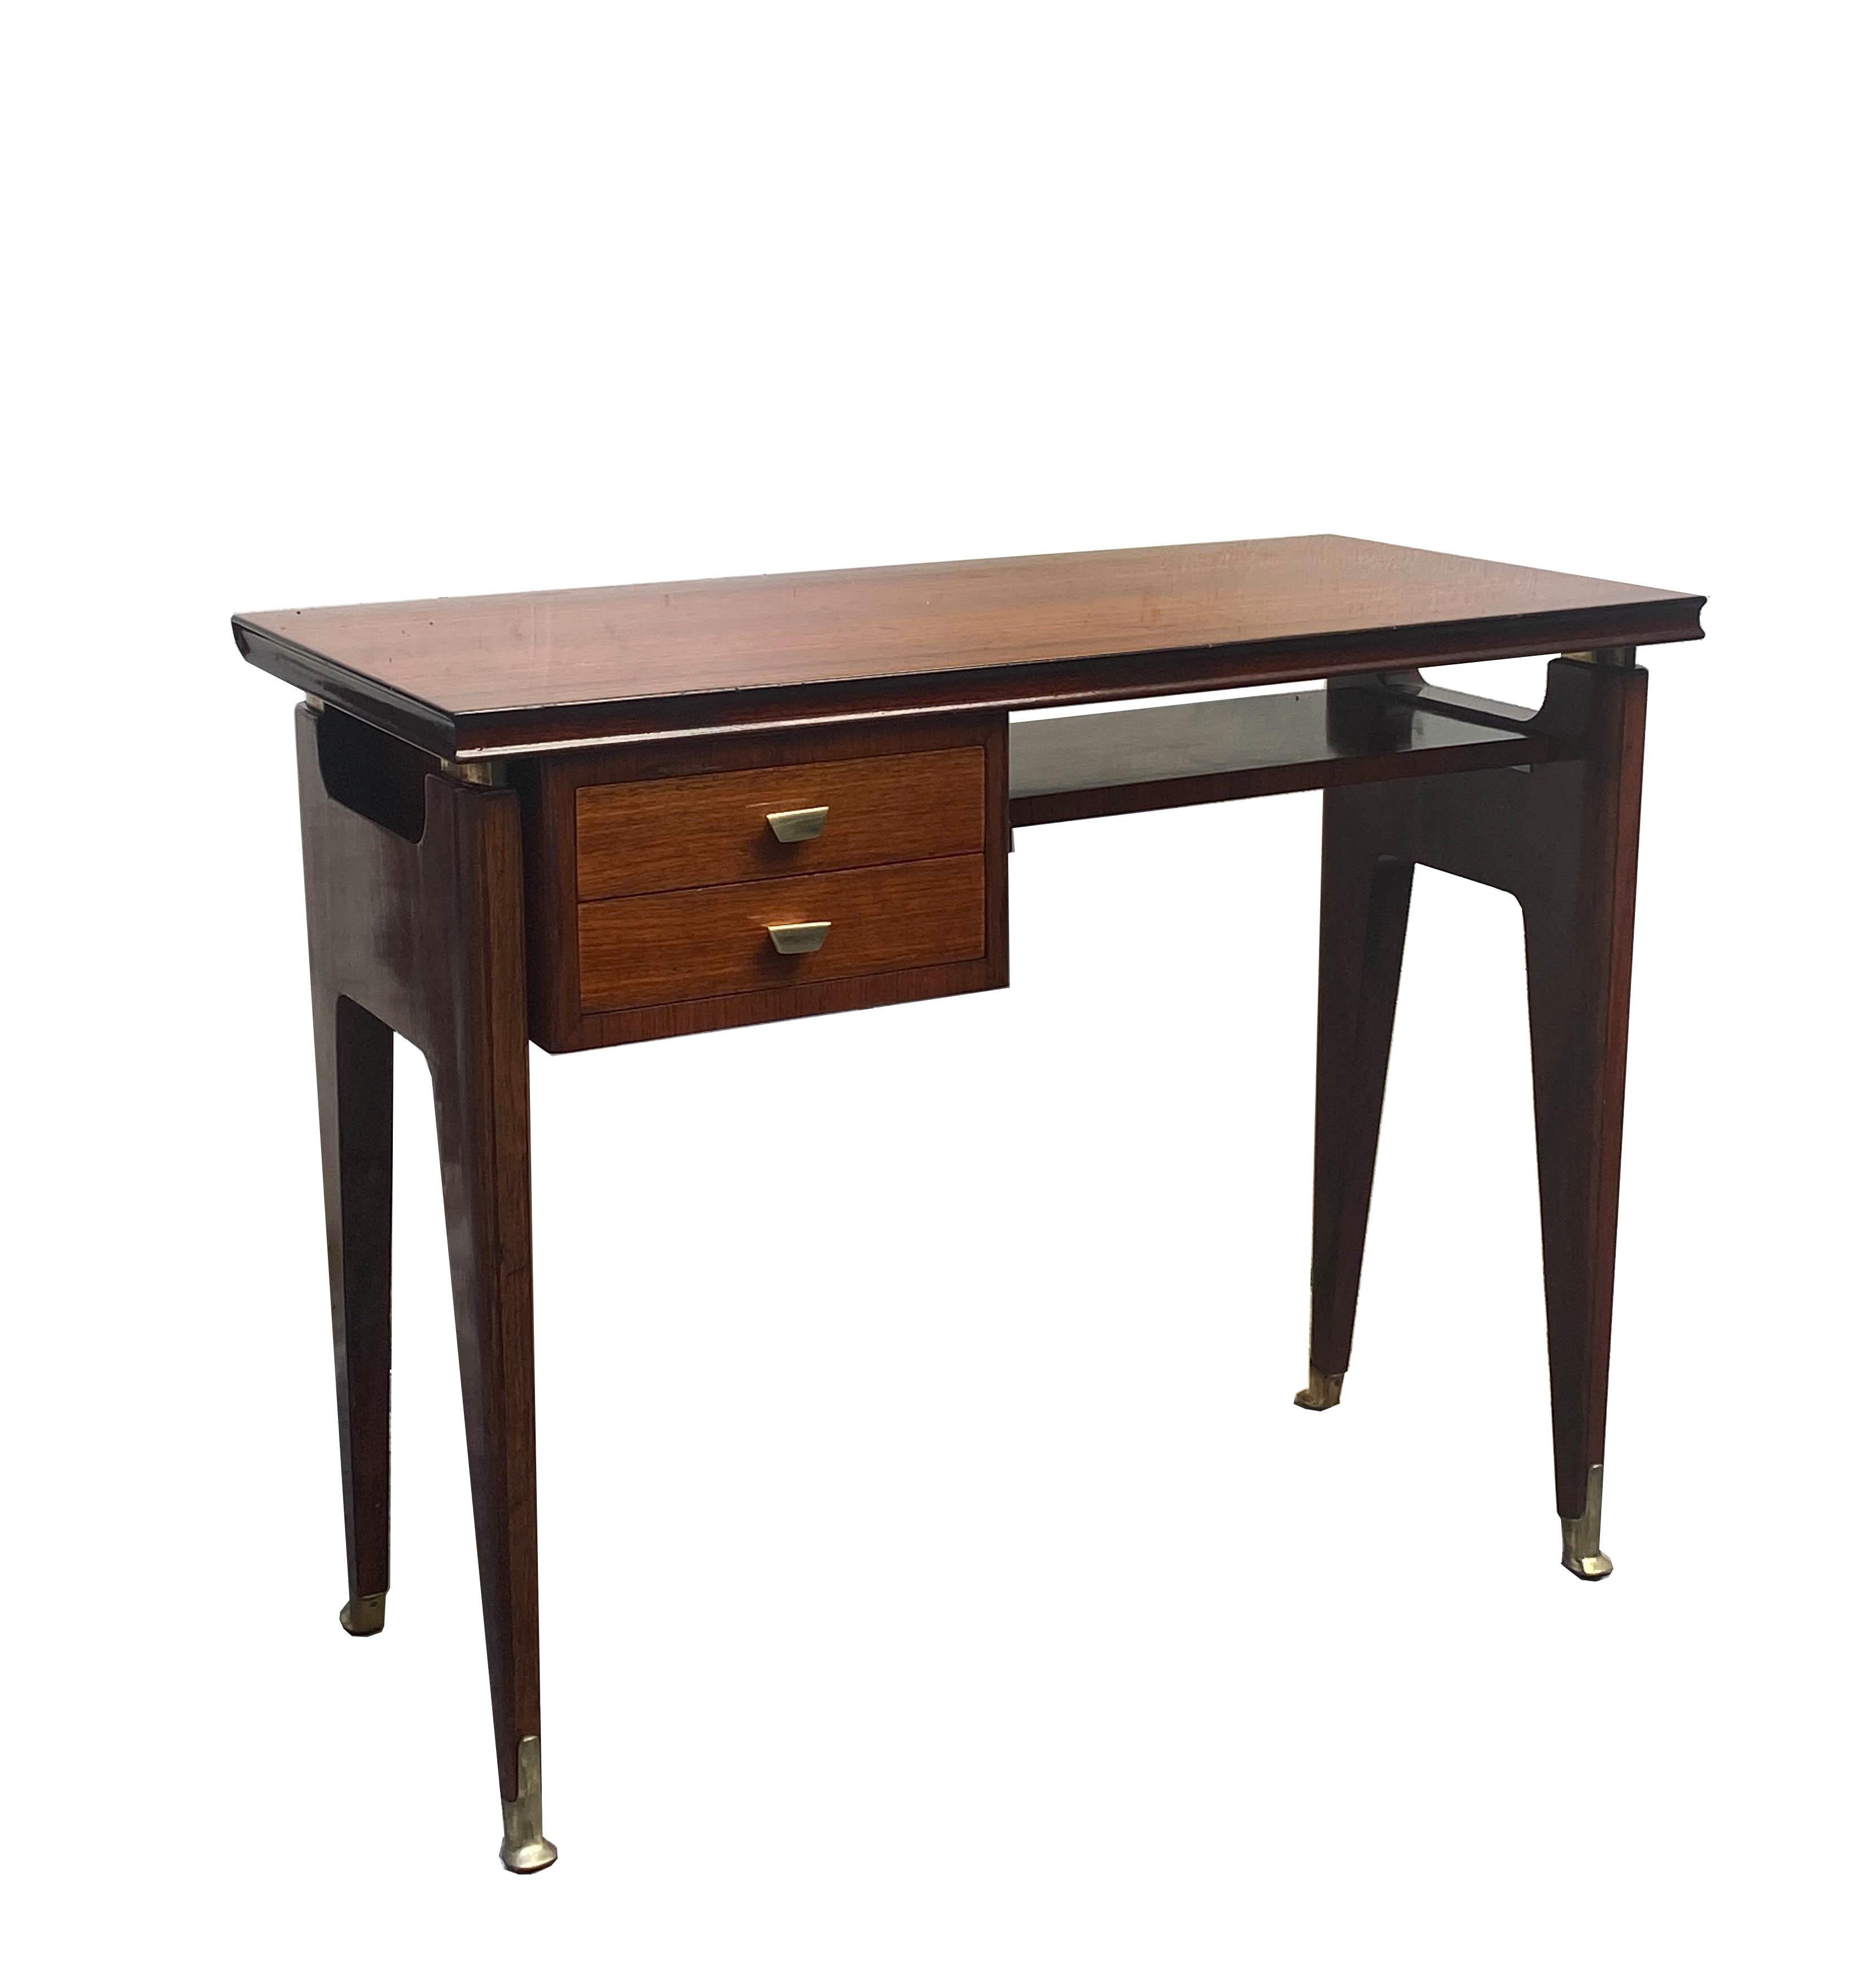 Der auch als „dattilo“ bezeichnete Schreibtisch wurde in den 1950er Jahren von Vittorio Dassi sehr gut entworfen. Er hat eine solide Struktur, die von Messingfüßen getragen wird, und hat zwei Schubladen auf der linken Seite. Er ist in einem sehr